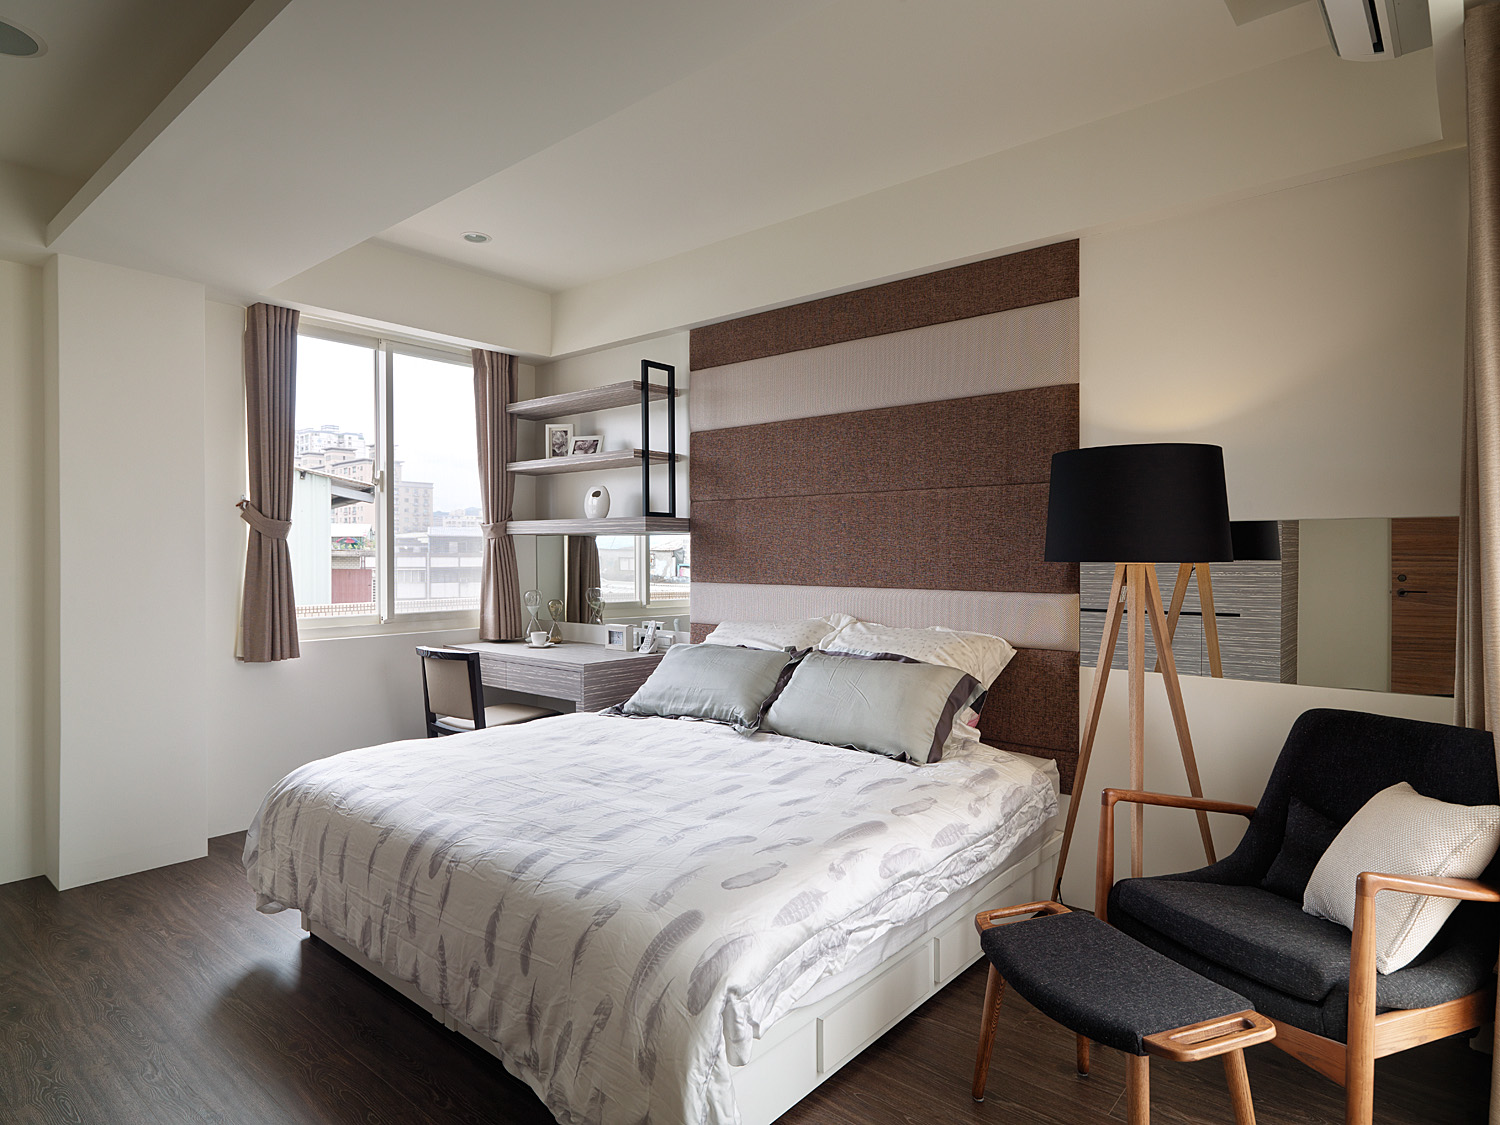 侧卧选择了素雅米色为主调，简化传统日式的空间布置，使空间显得文艺又优雅。